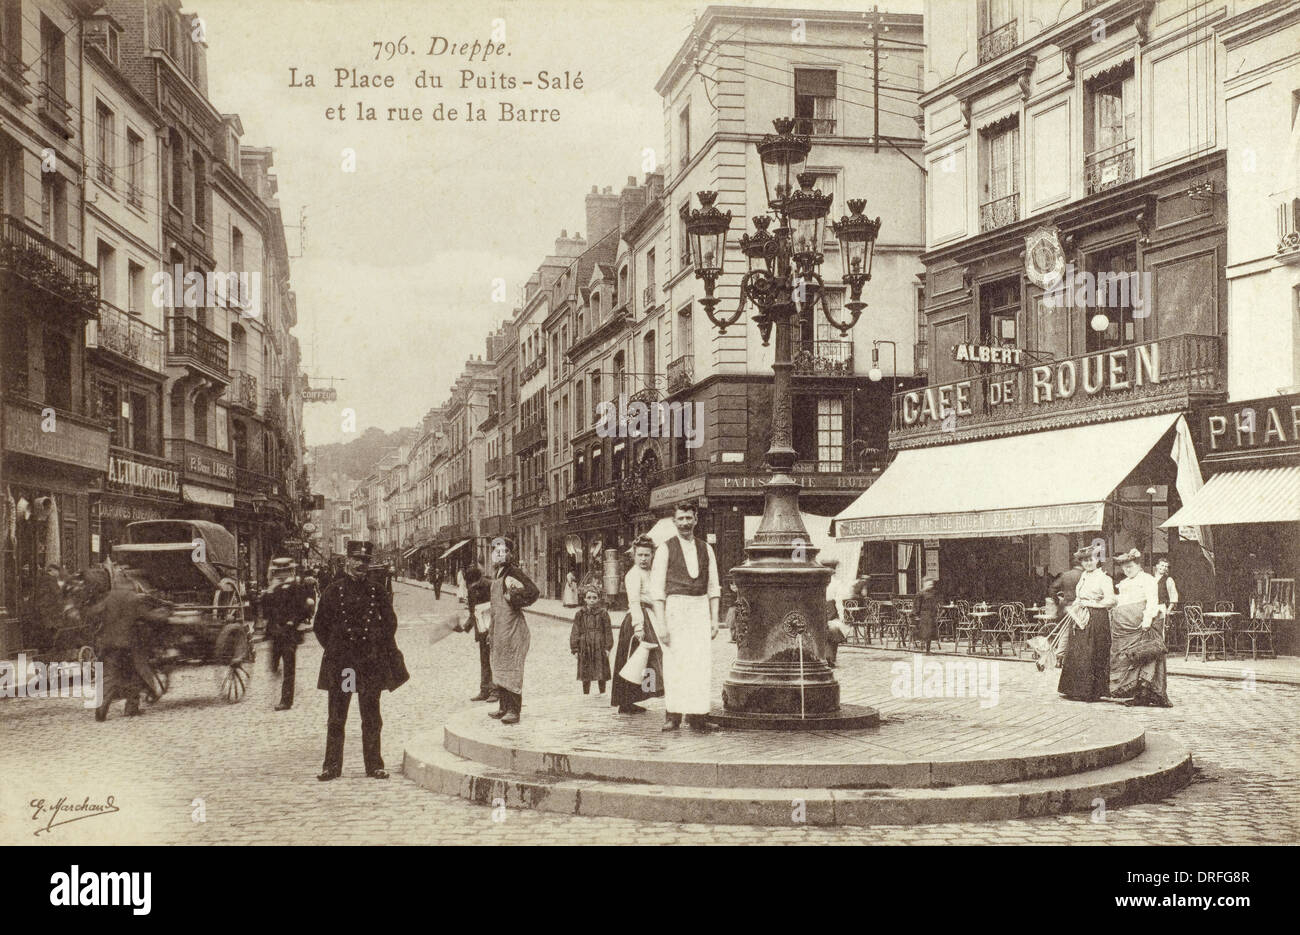 Dieppe, France - La Place du Puits-Sale Stock Photo